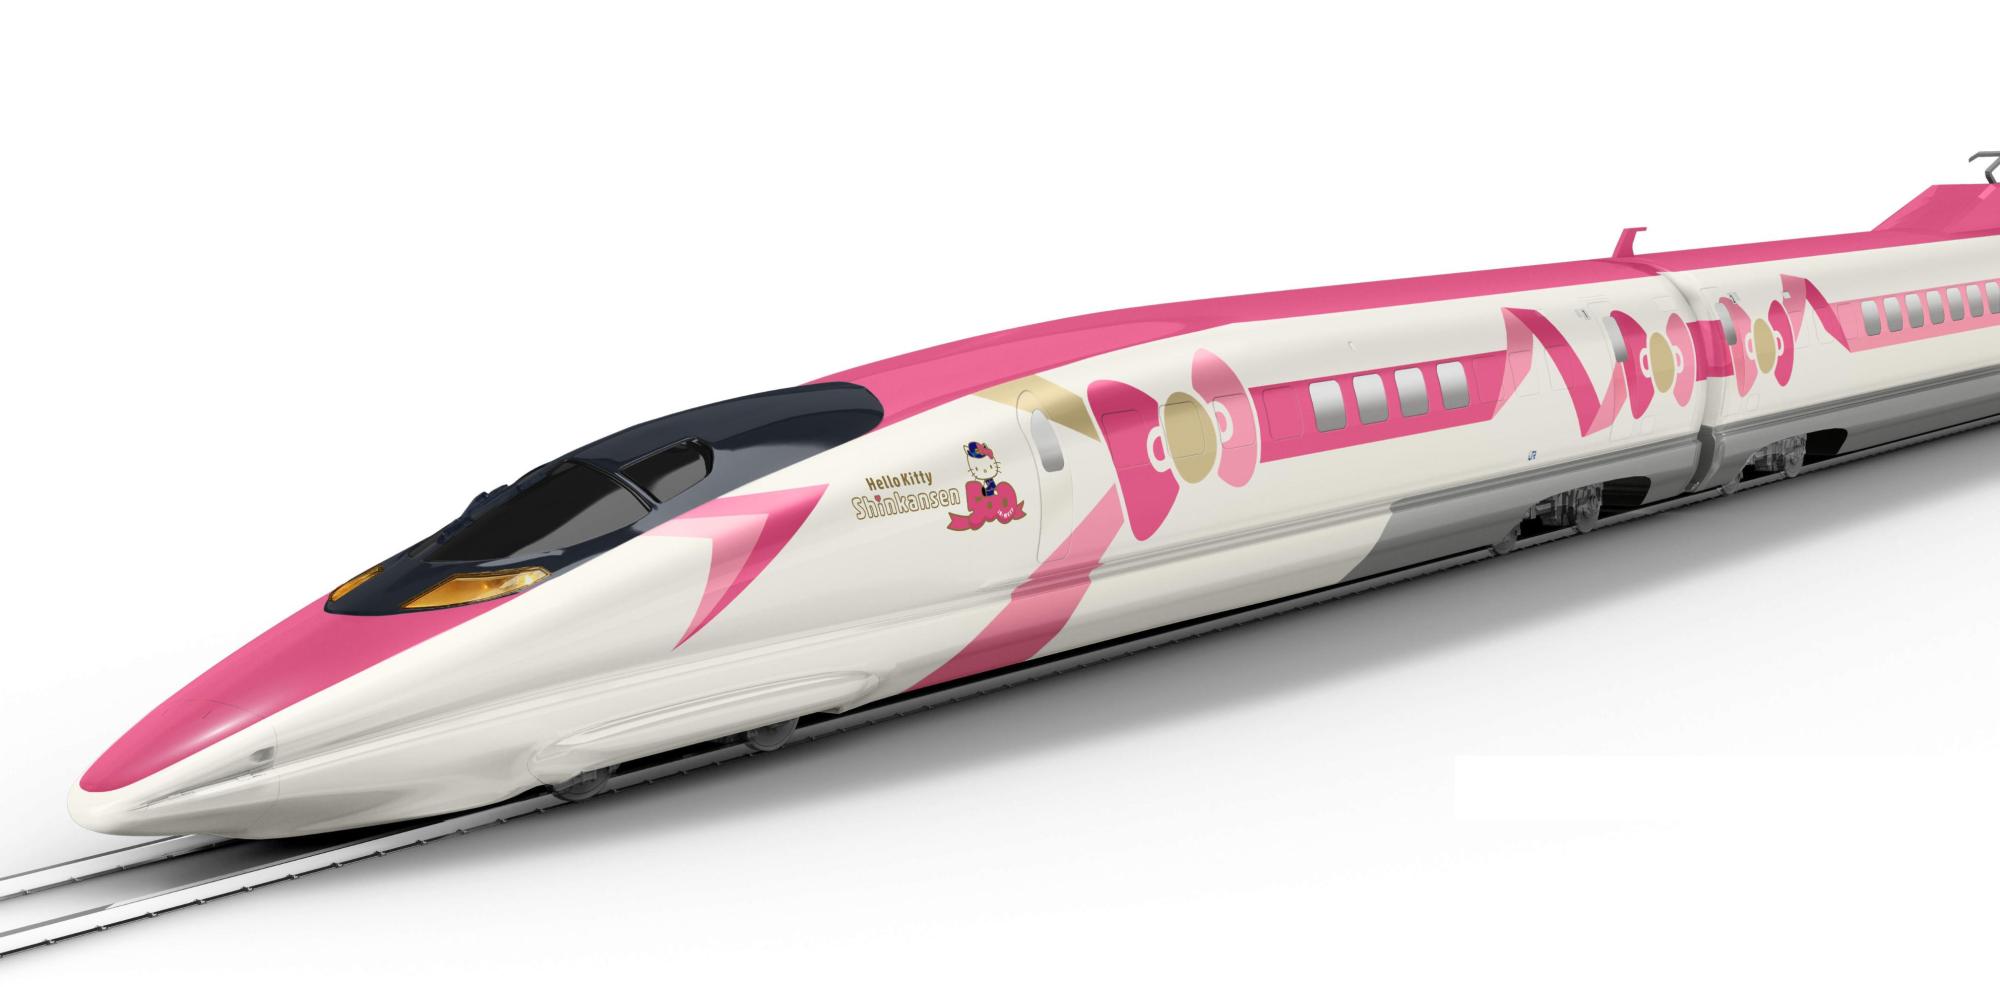 Biało różowy pociąg z namalowaną różową kokardą po boku na białym tle.